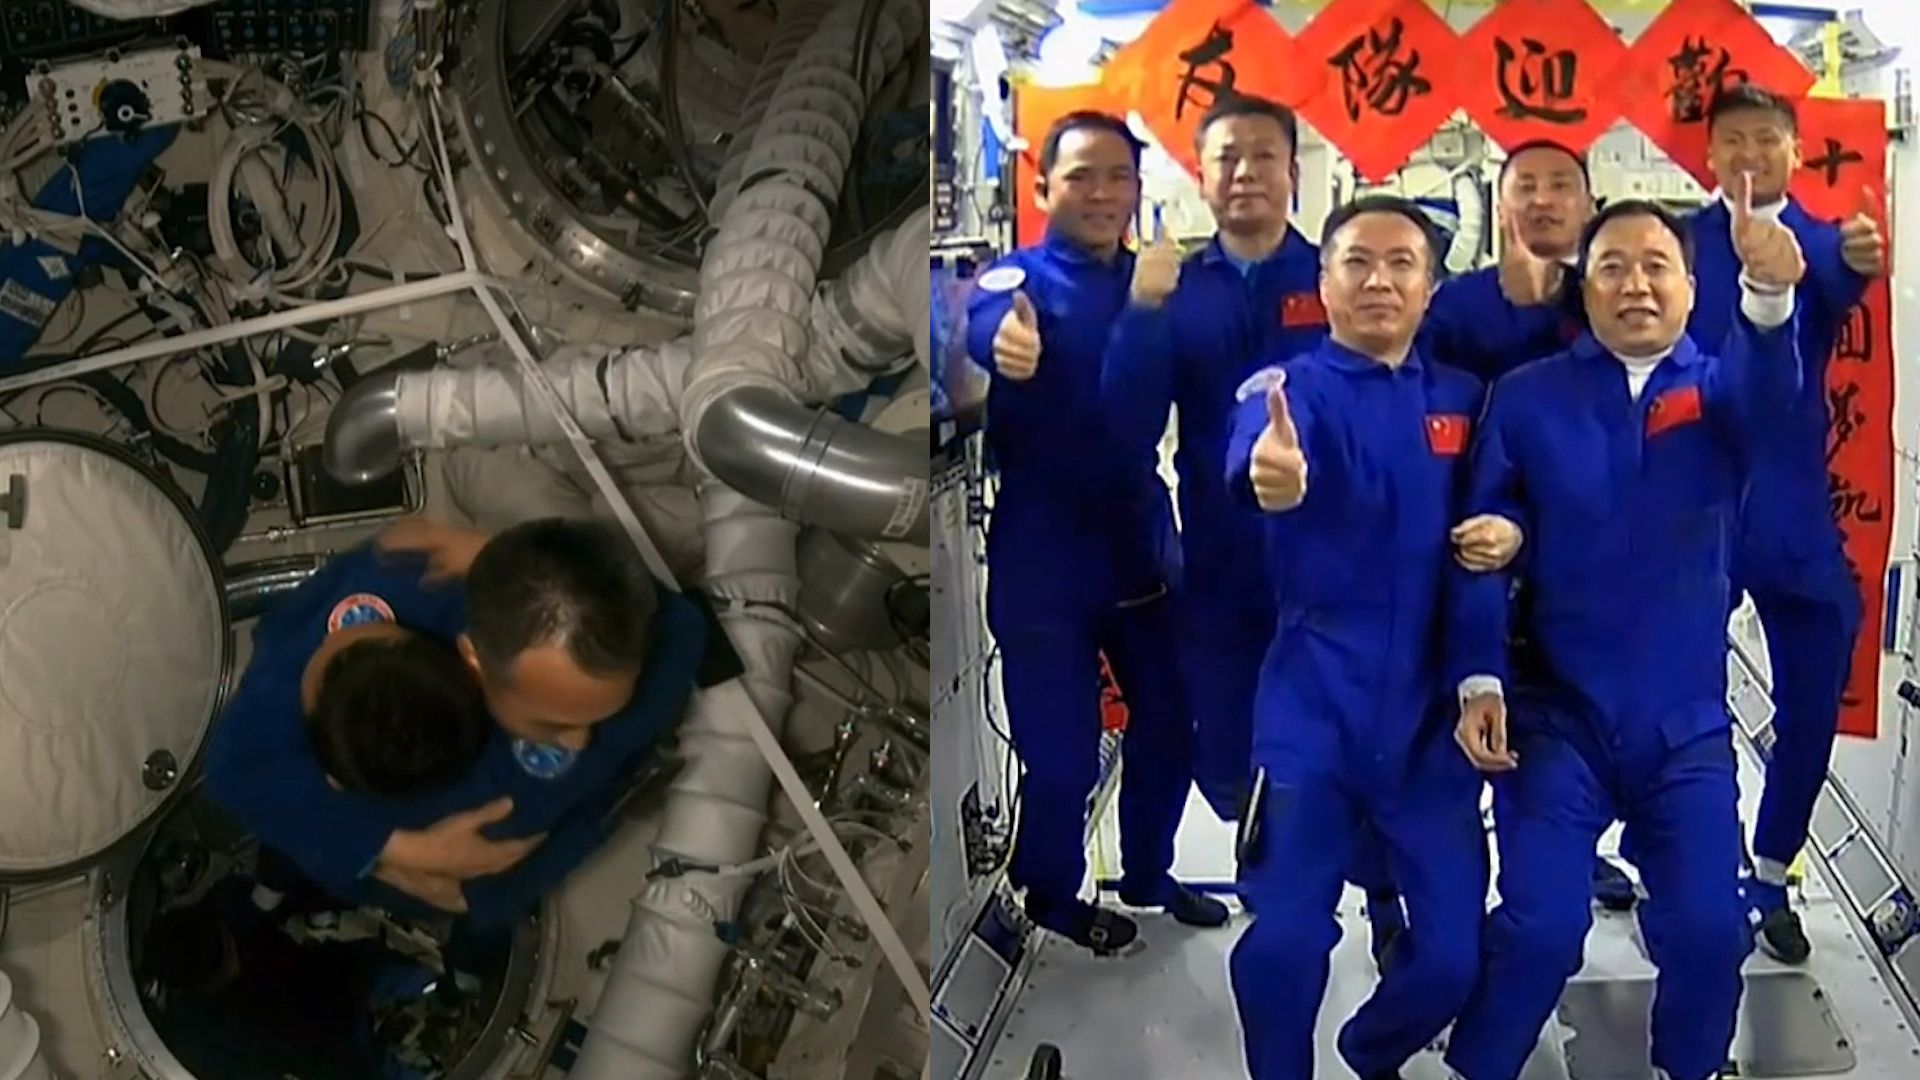 全程：神十五、神十六乘组太空胜利会师 6名航天员激动拥抱、合影